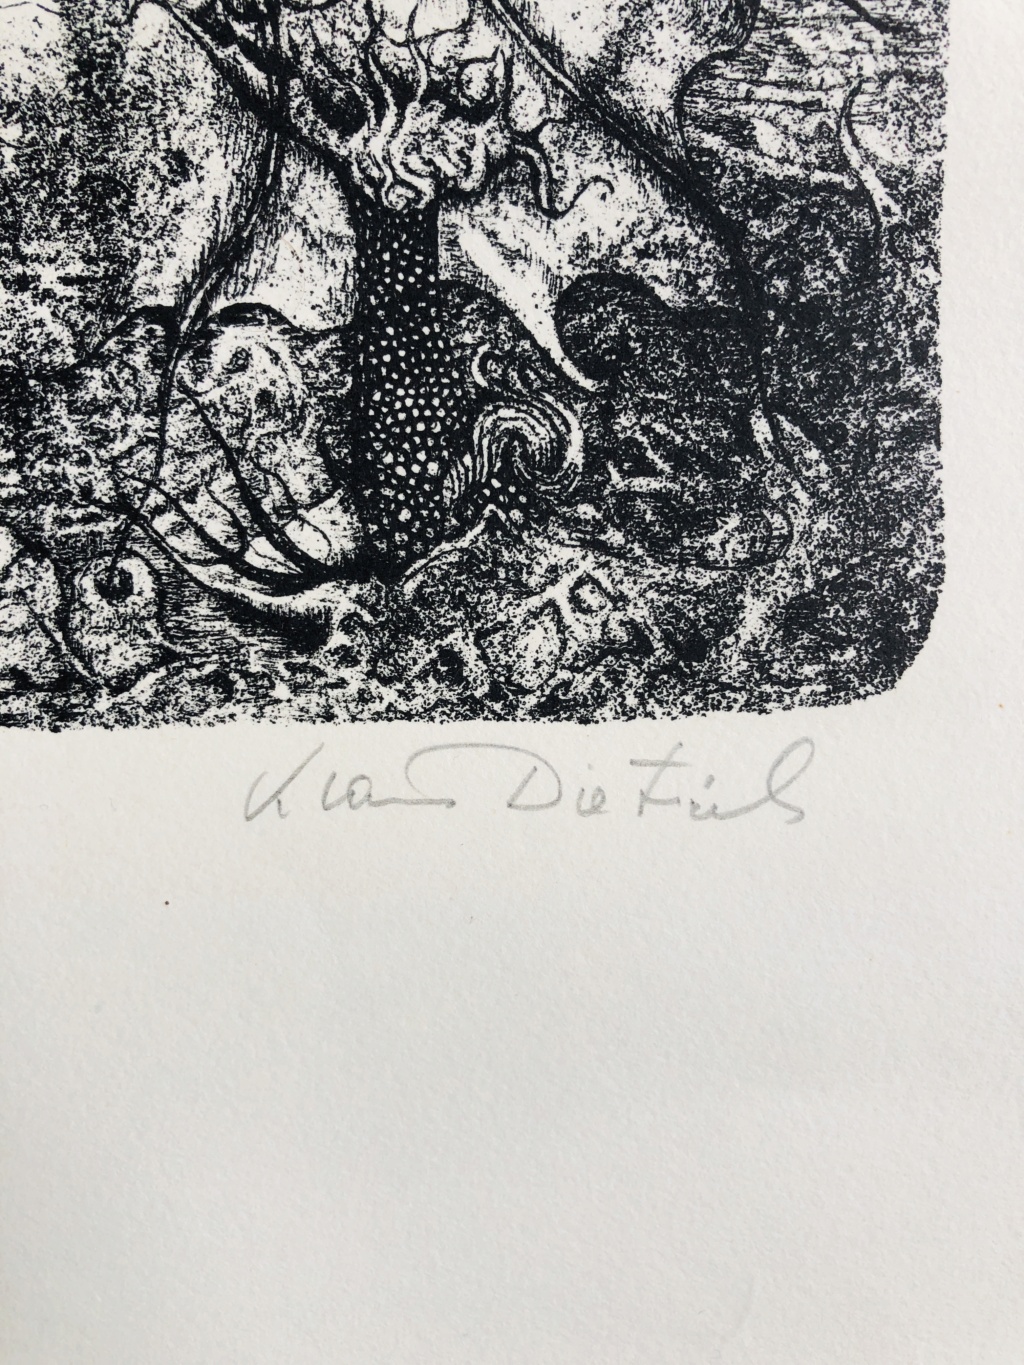 Lithographie créatures surréalistes  signée Klaus dietrich 4aa22310